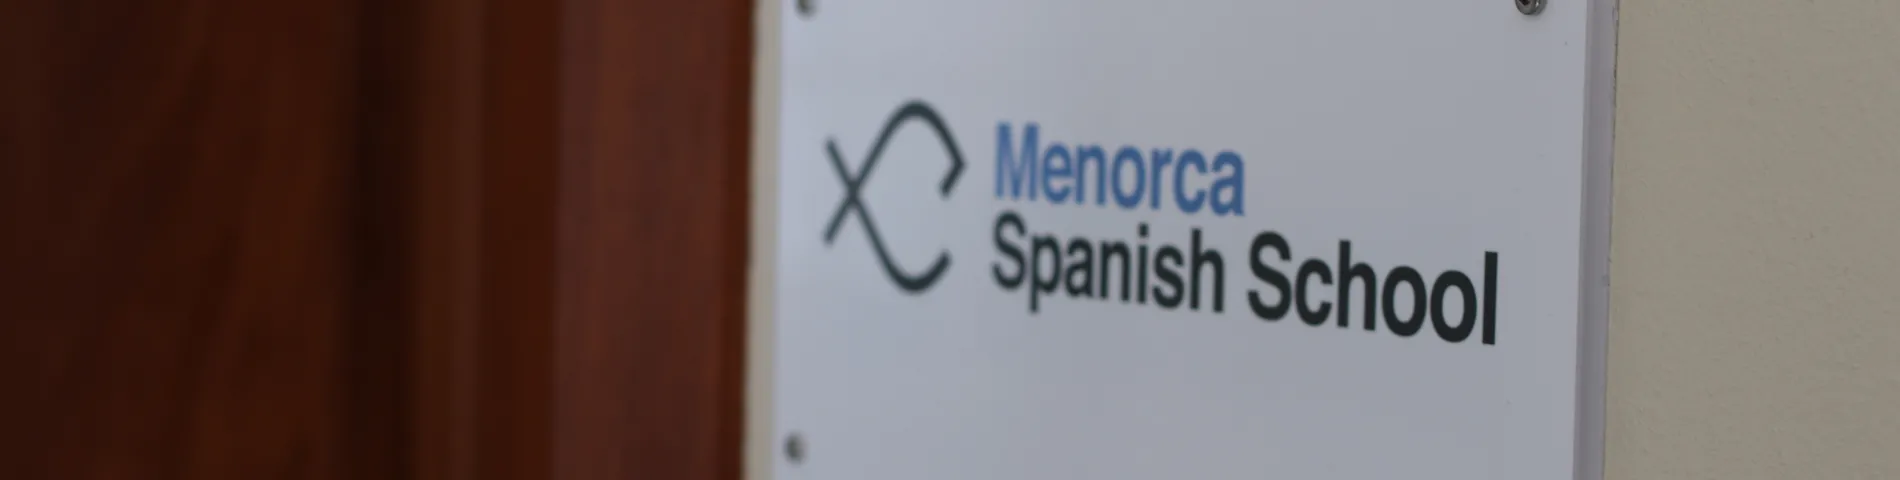 Menorca Spanish School Bild 1